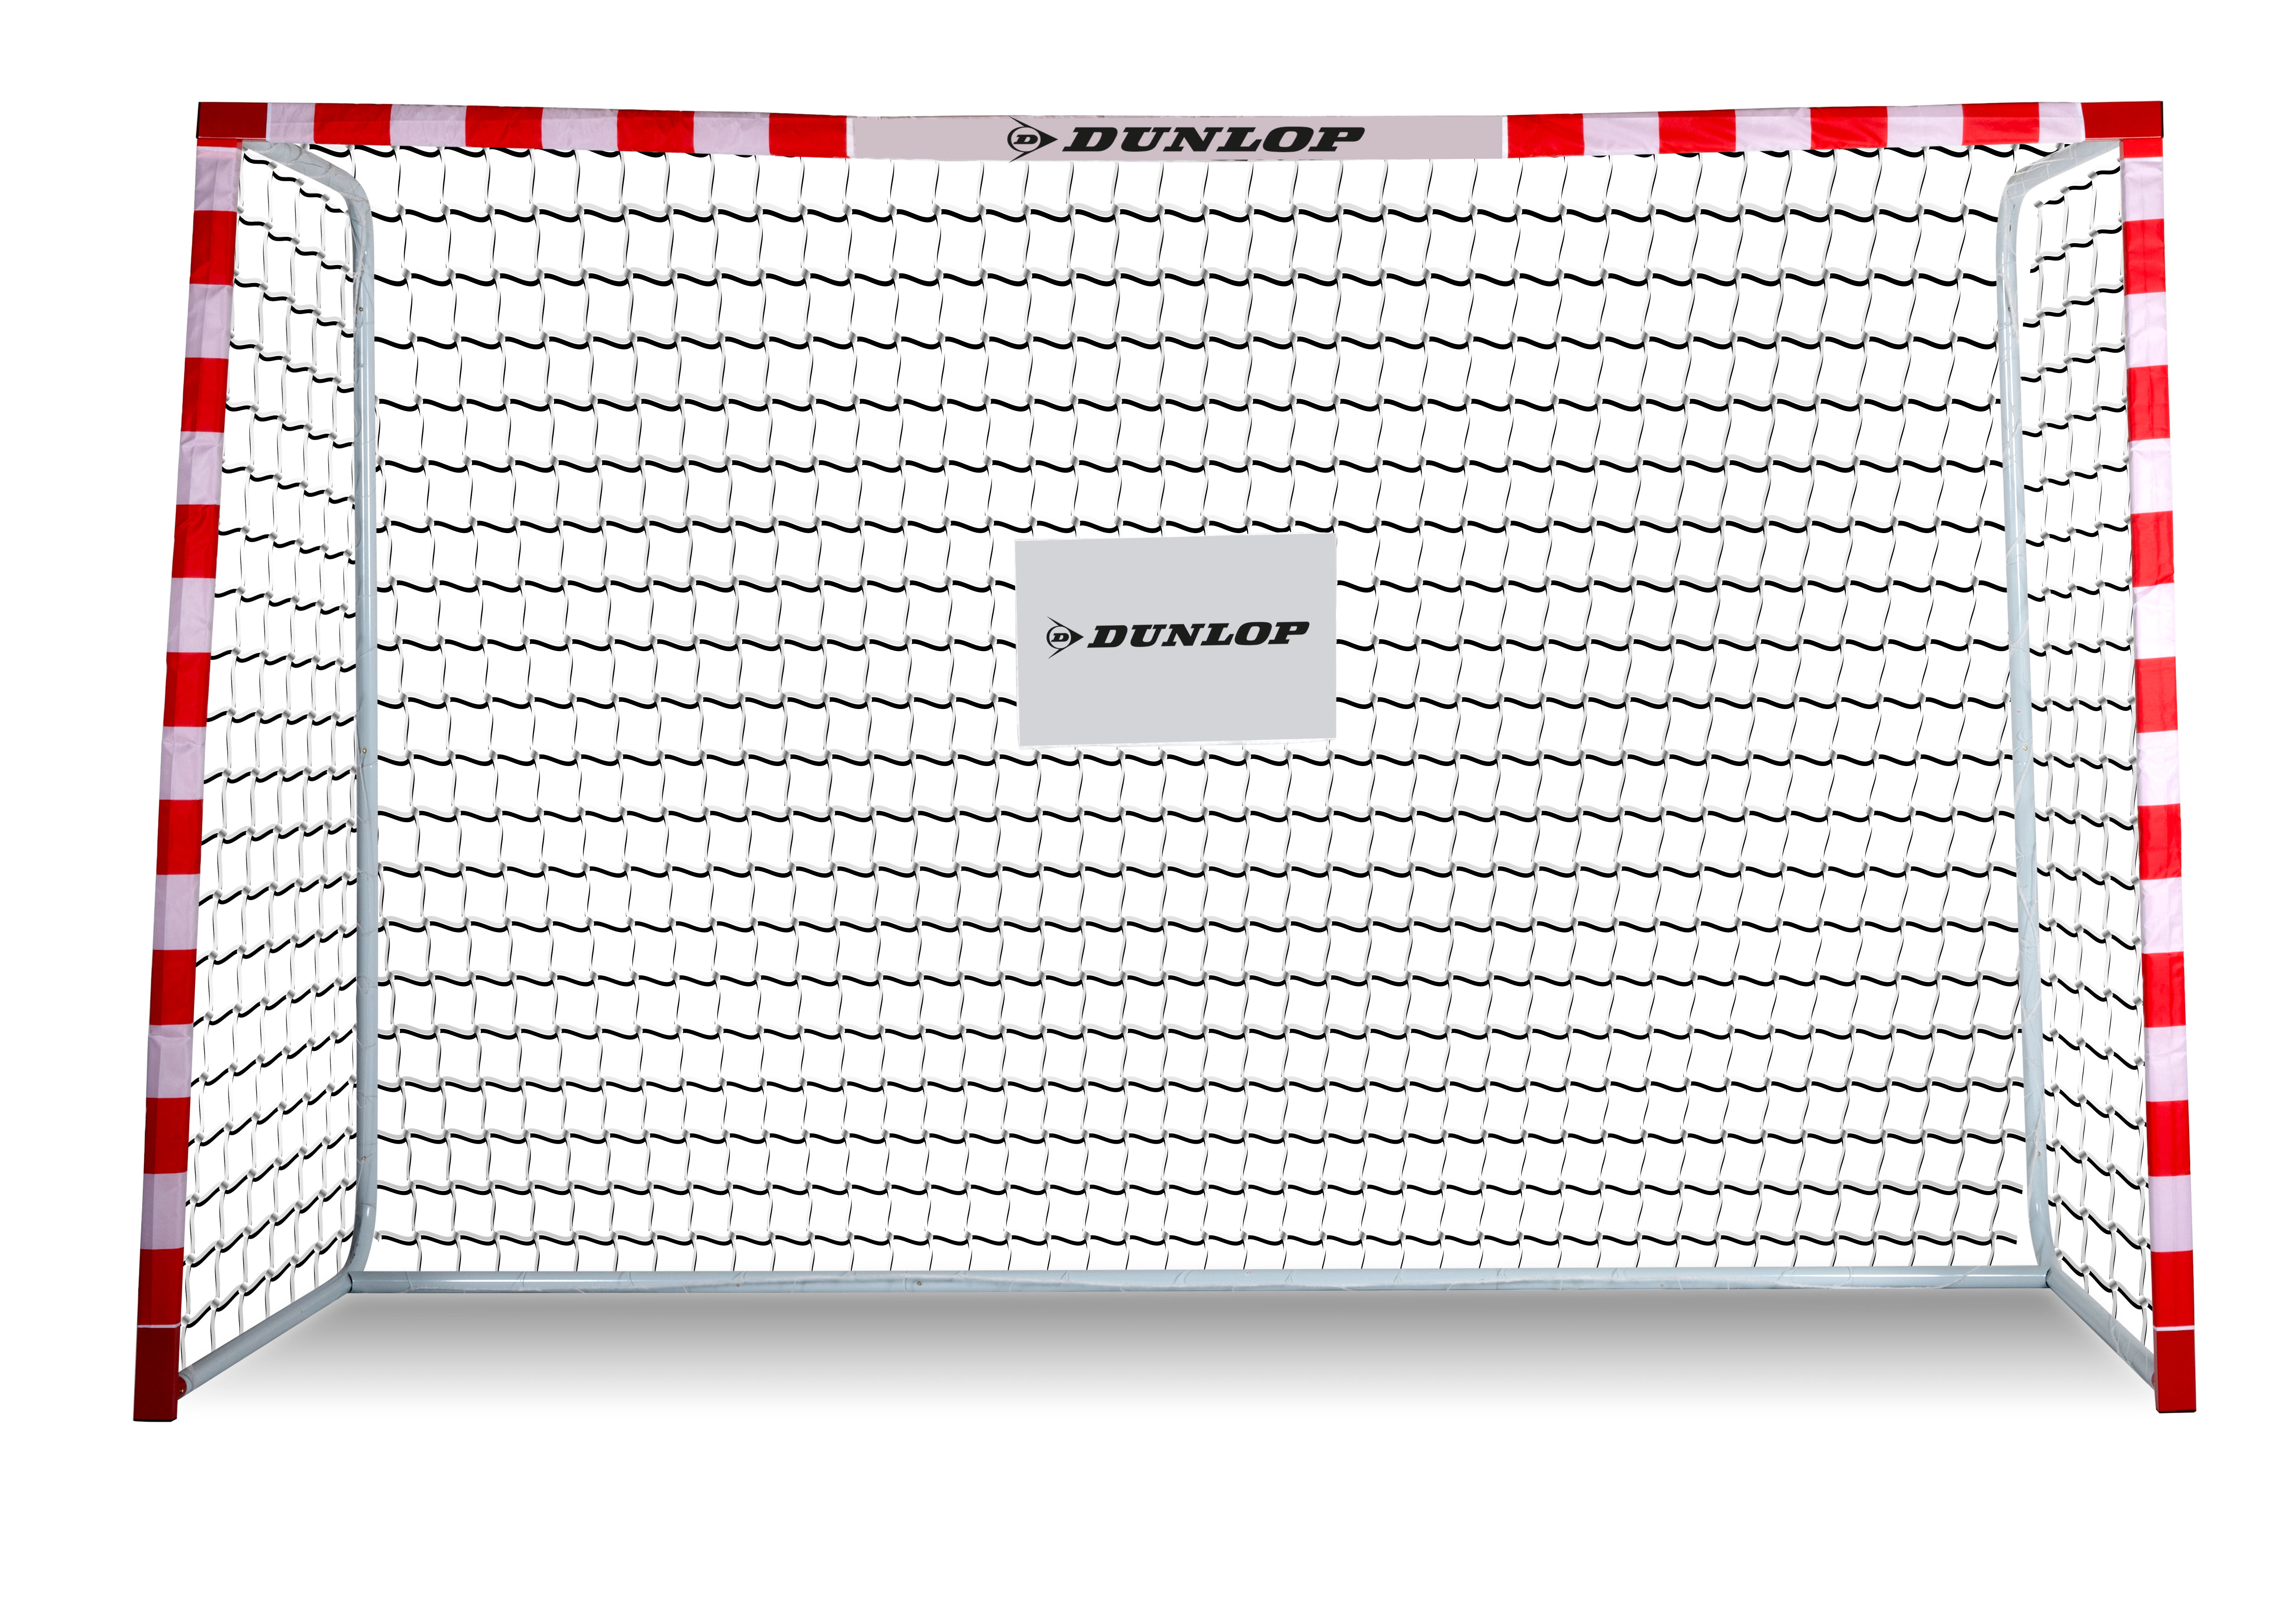 Dunlop Voetbaldoel - 300 x 200 x 110 CM - Metaal - Voetbaltrainingsmateriaal voor Alle Leeftijden - Makkelijke Montage - Wit/ Rood